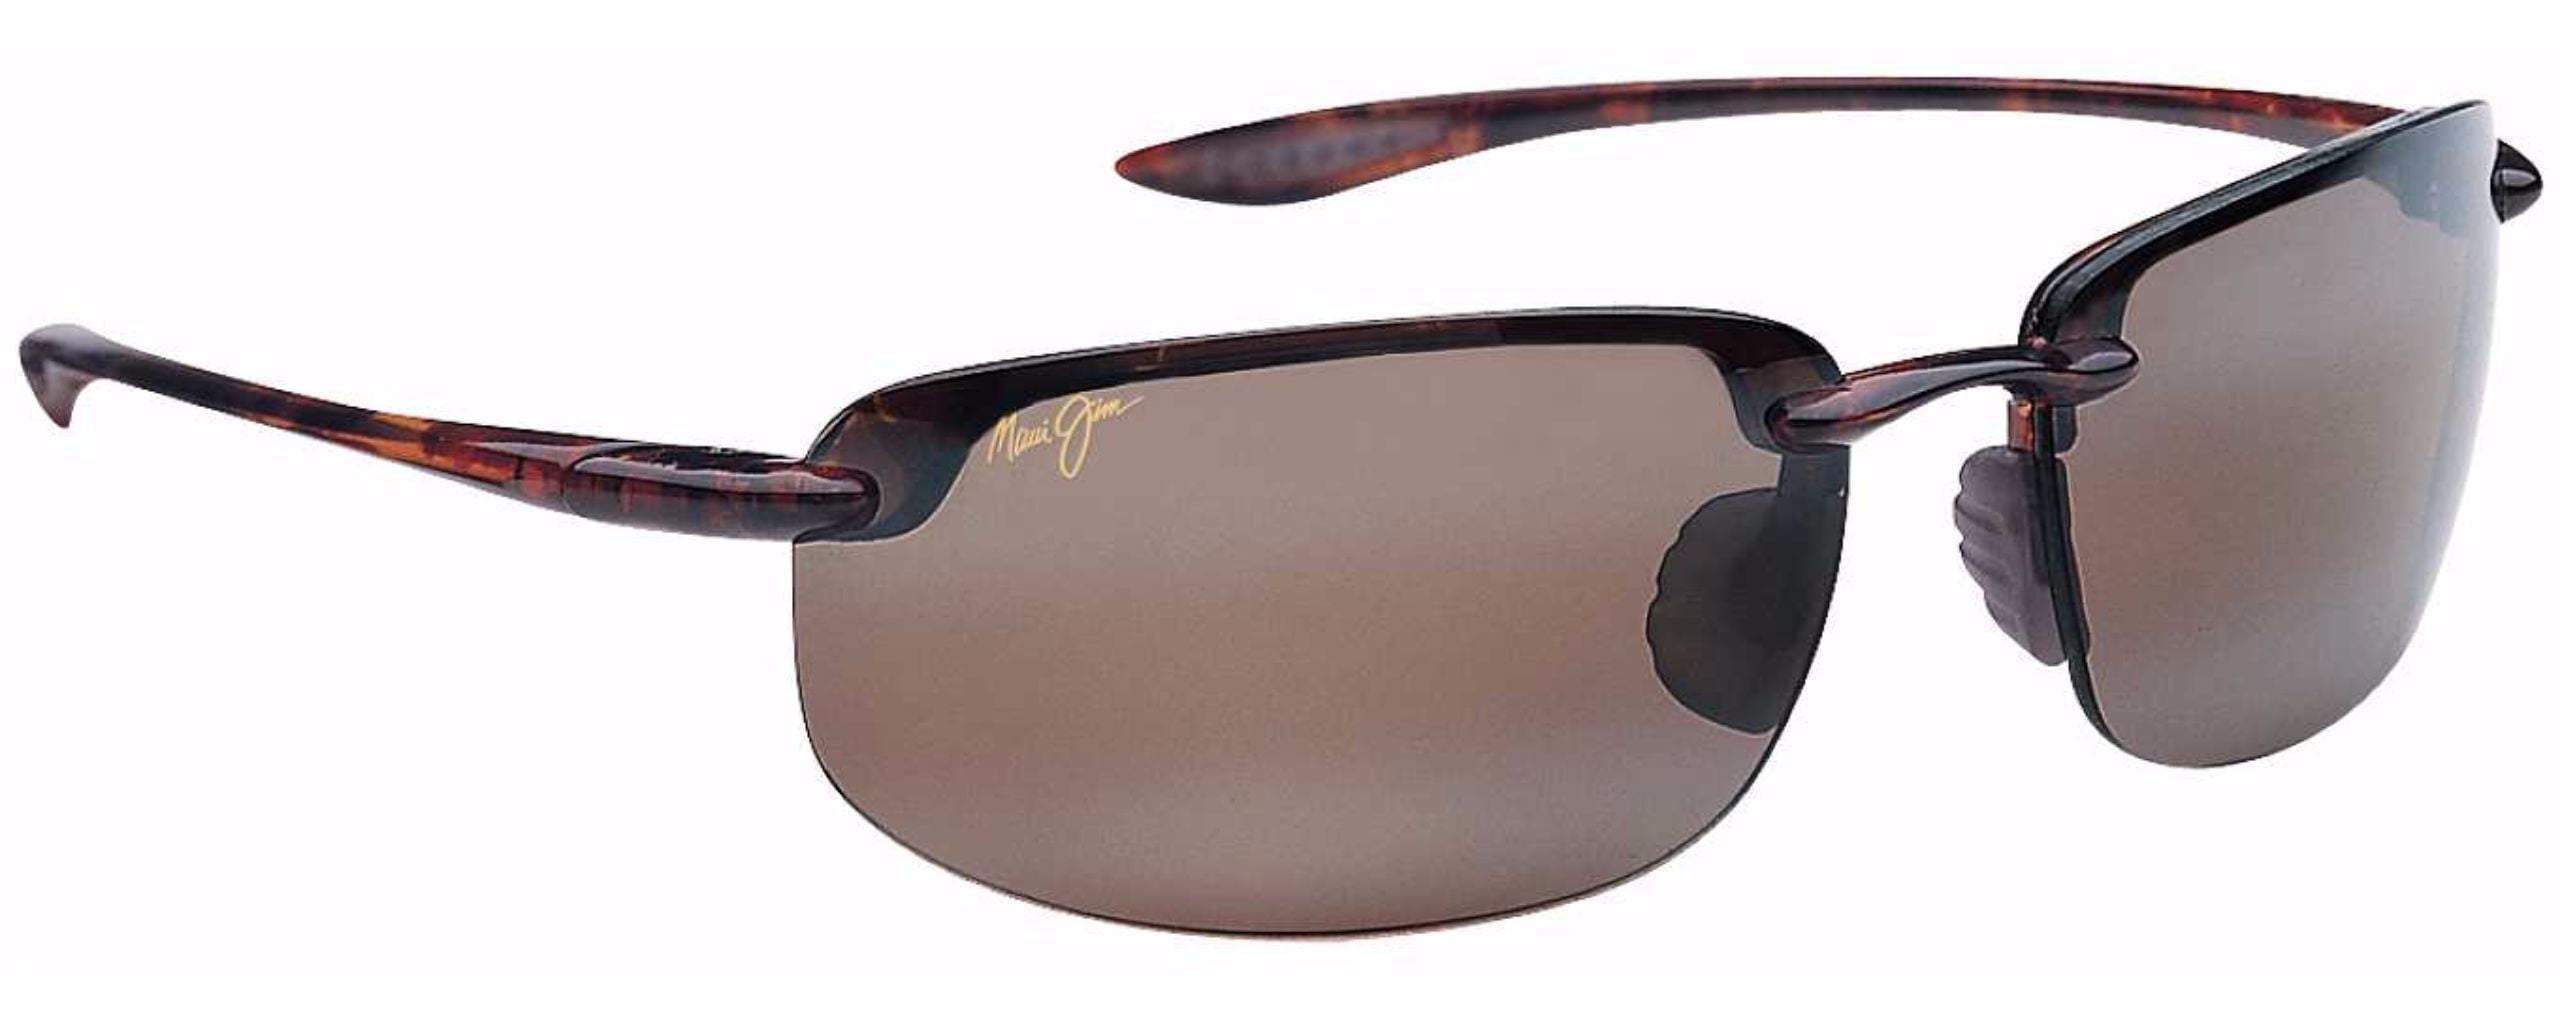 Maui Jim Ho'okipa Sunglasses